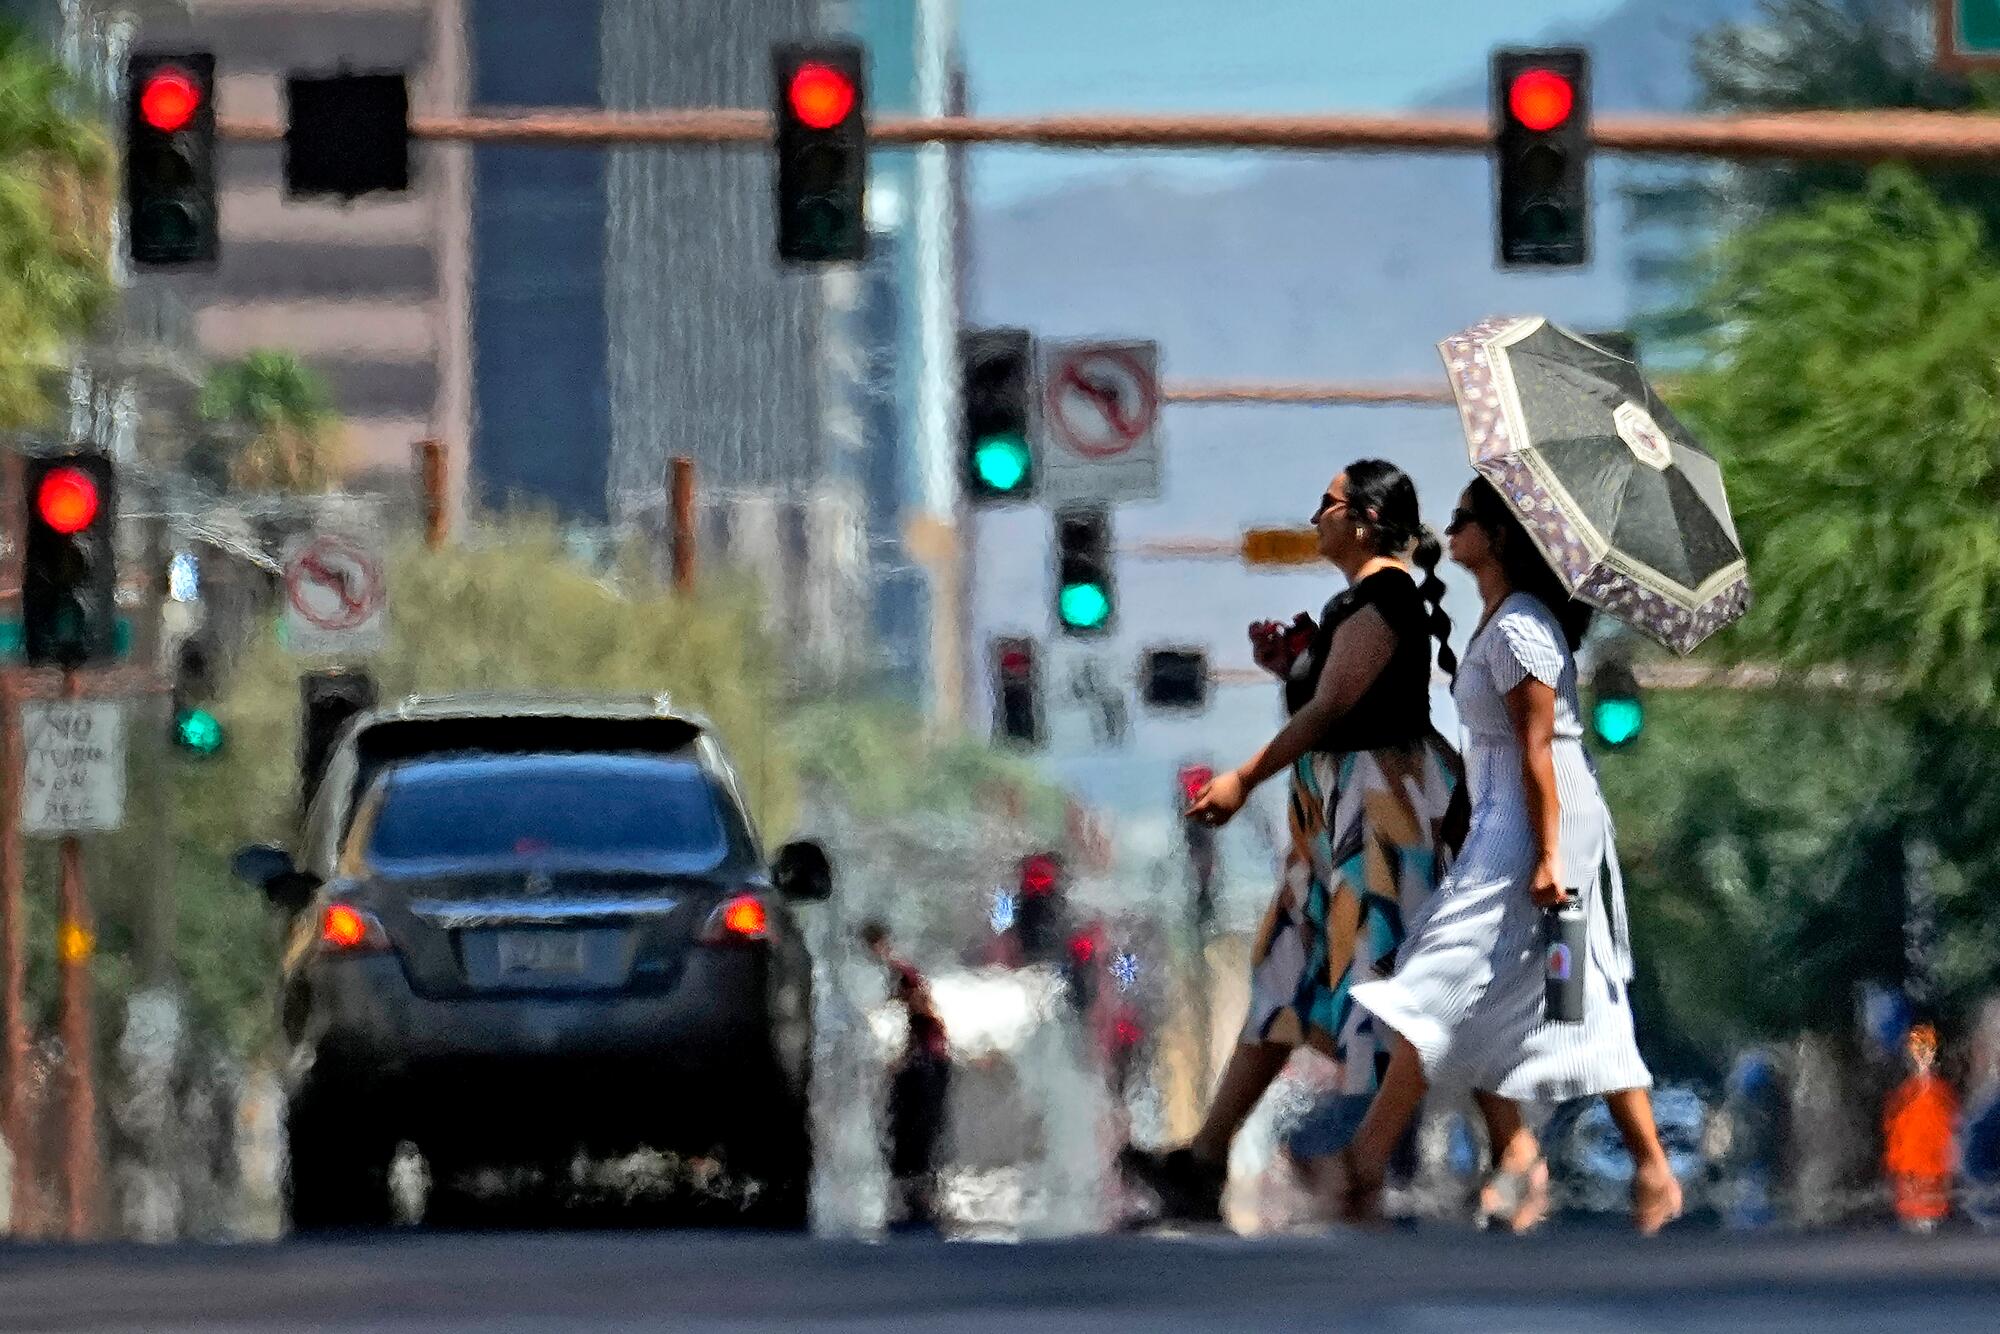 Hitzewellen breiten sich aus dem heißen Asphalt, als zwei Frauen eine Straße überqueren.